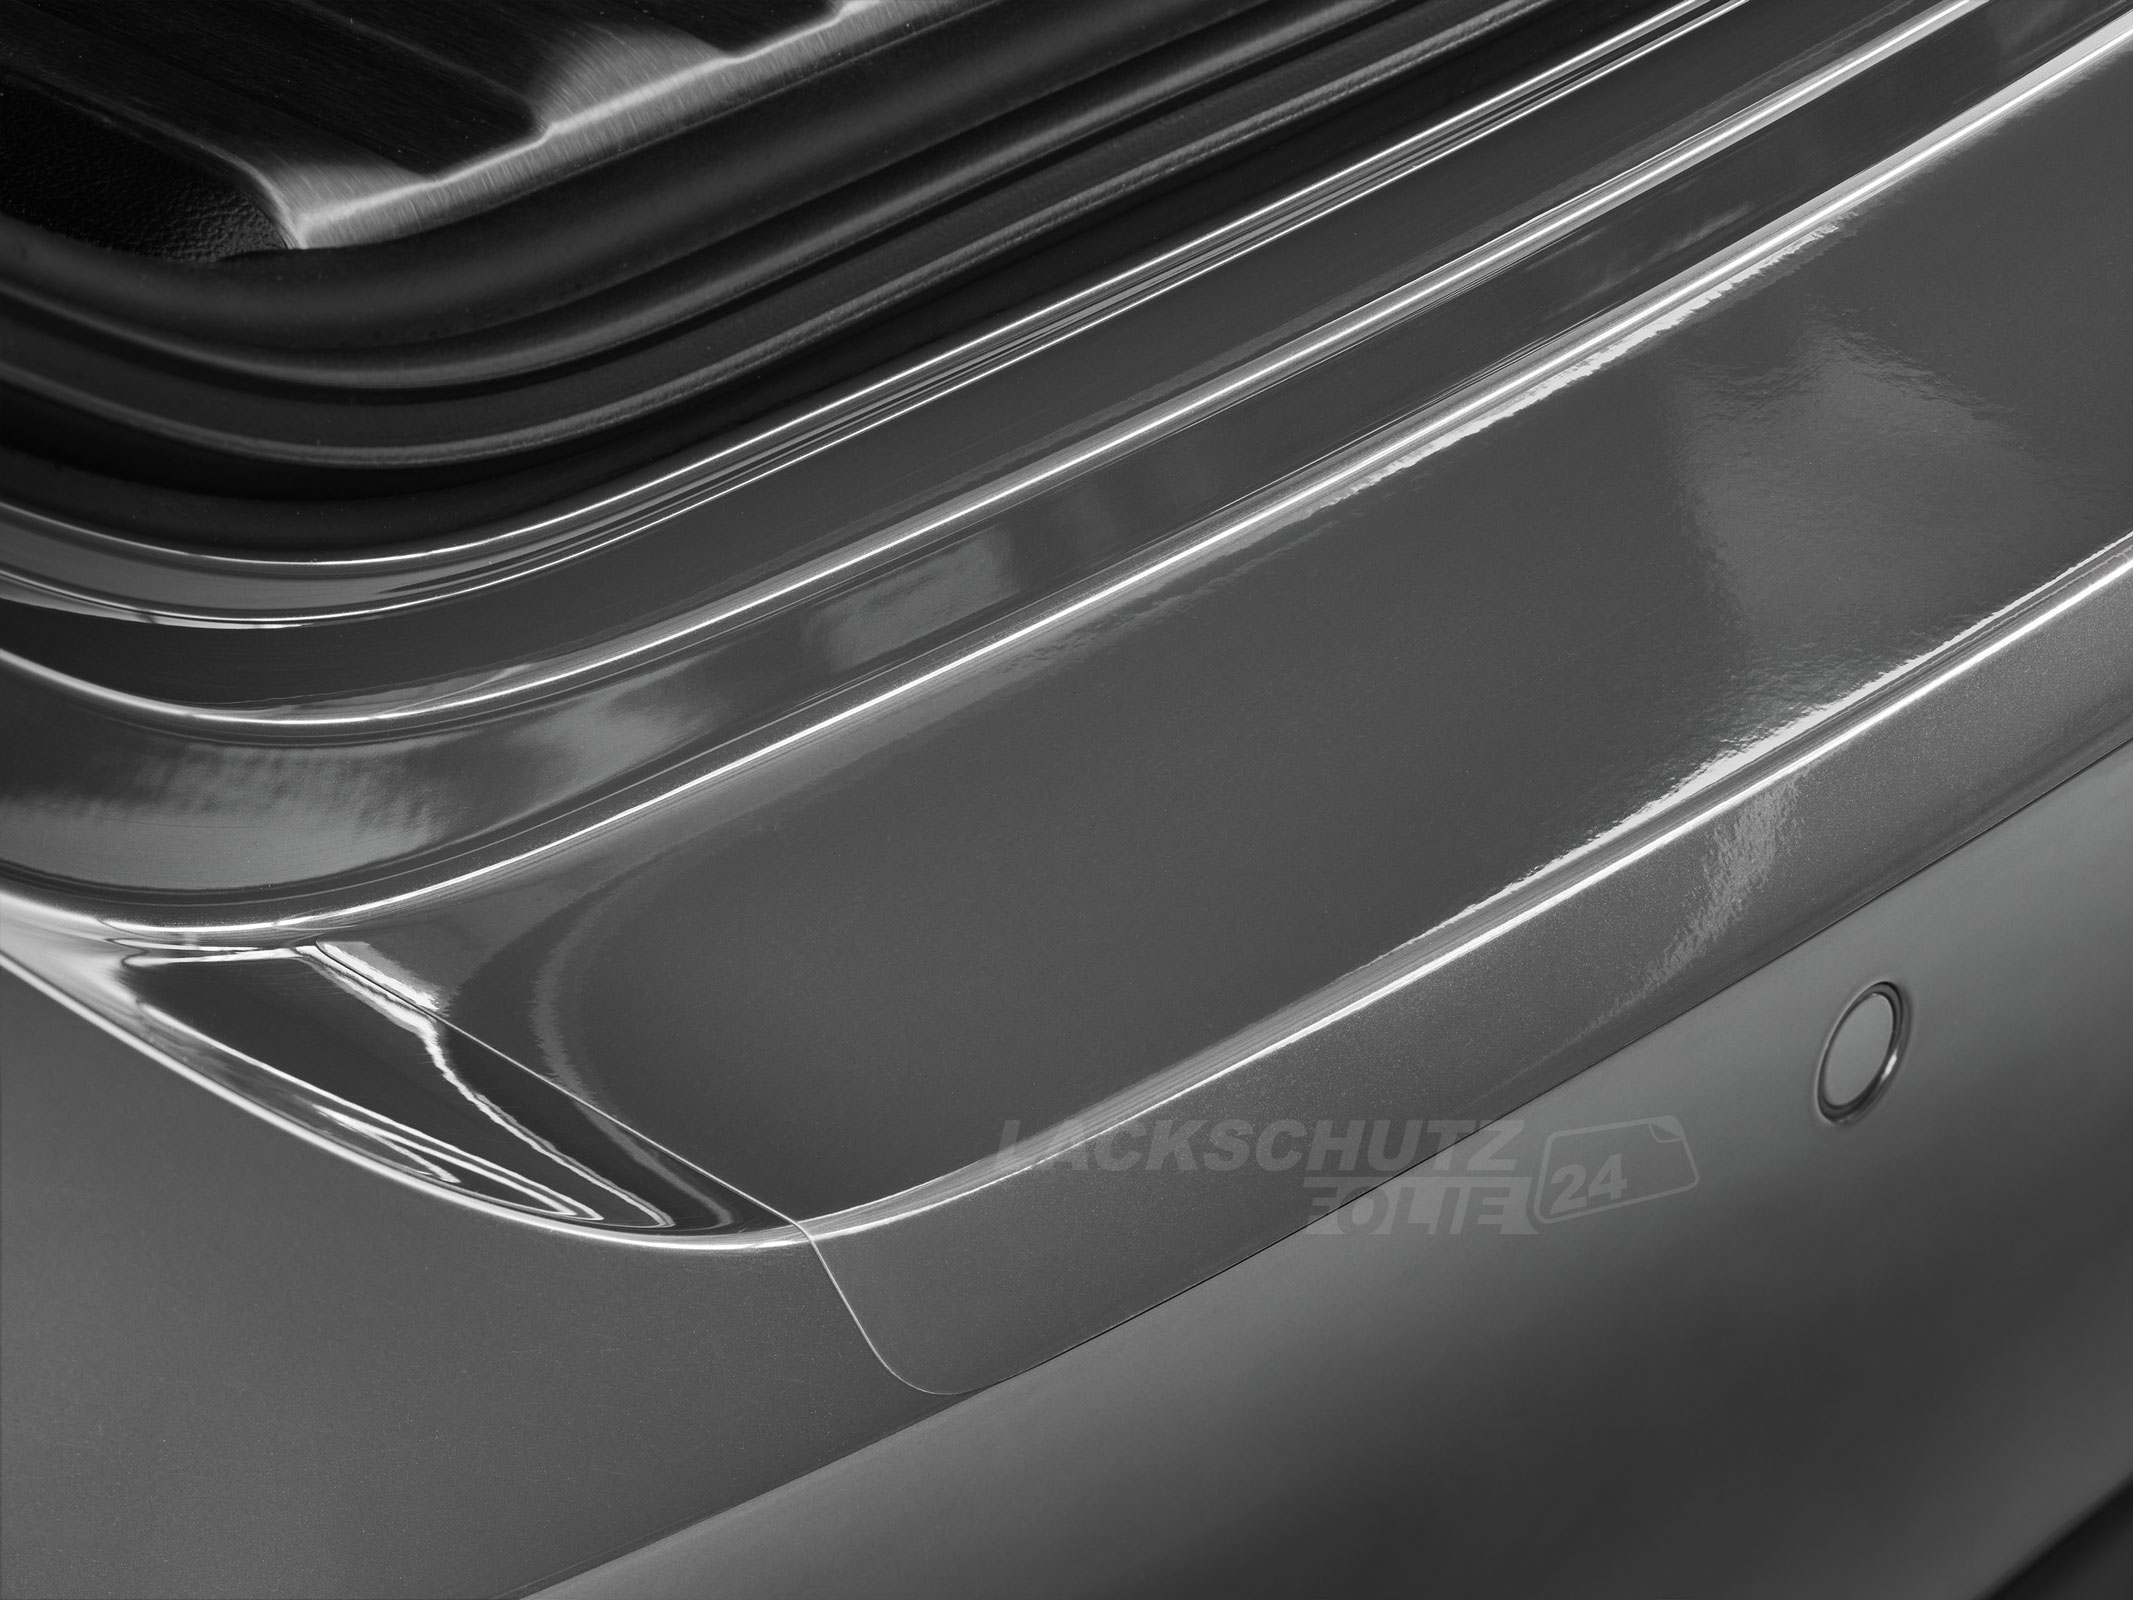 Ladekantenschutzfolie - Transparent Glatt Hochglänzend 150 µm stark für Toyota Avensis Limousine Typ T27, BJ 2008-2011